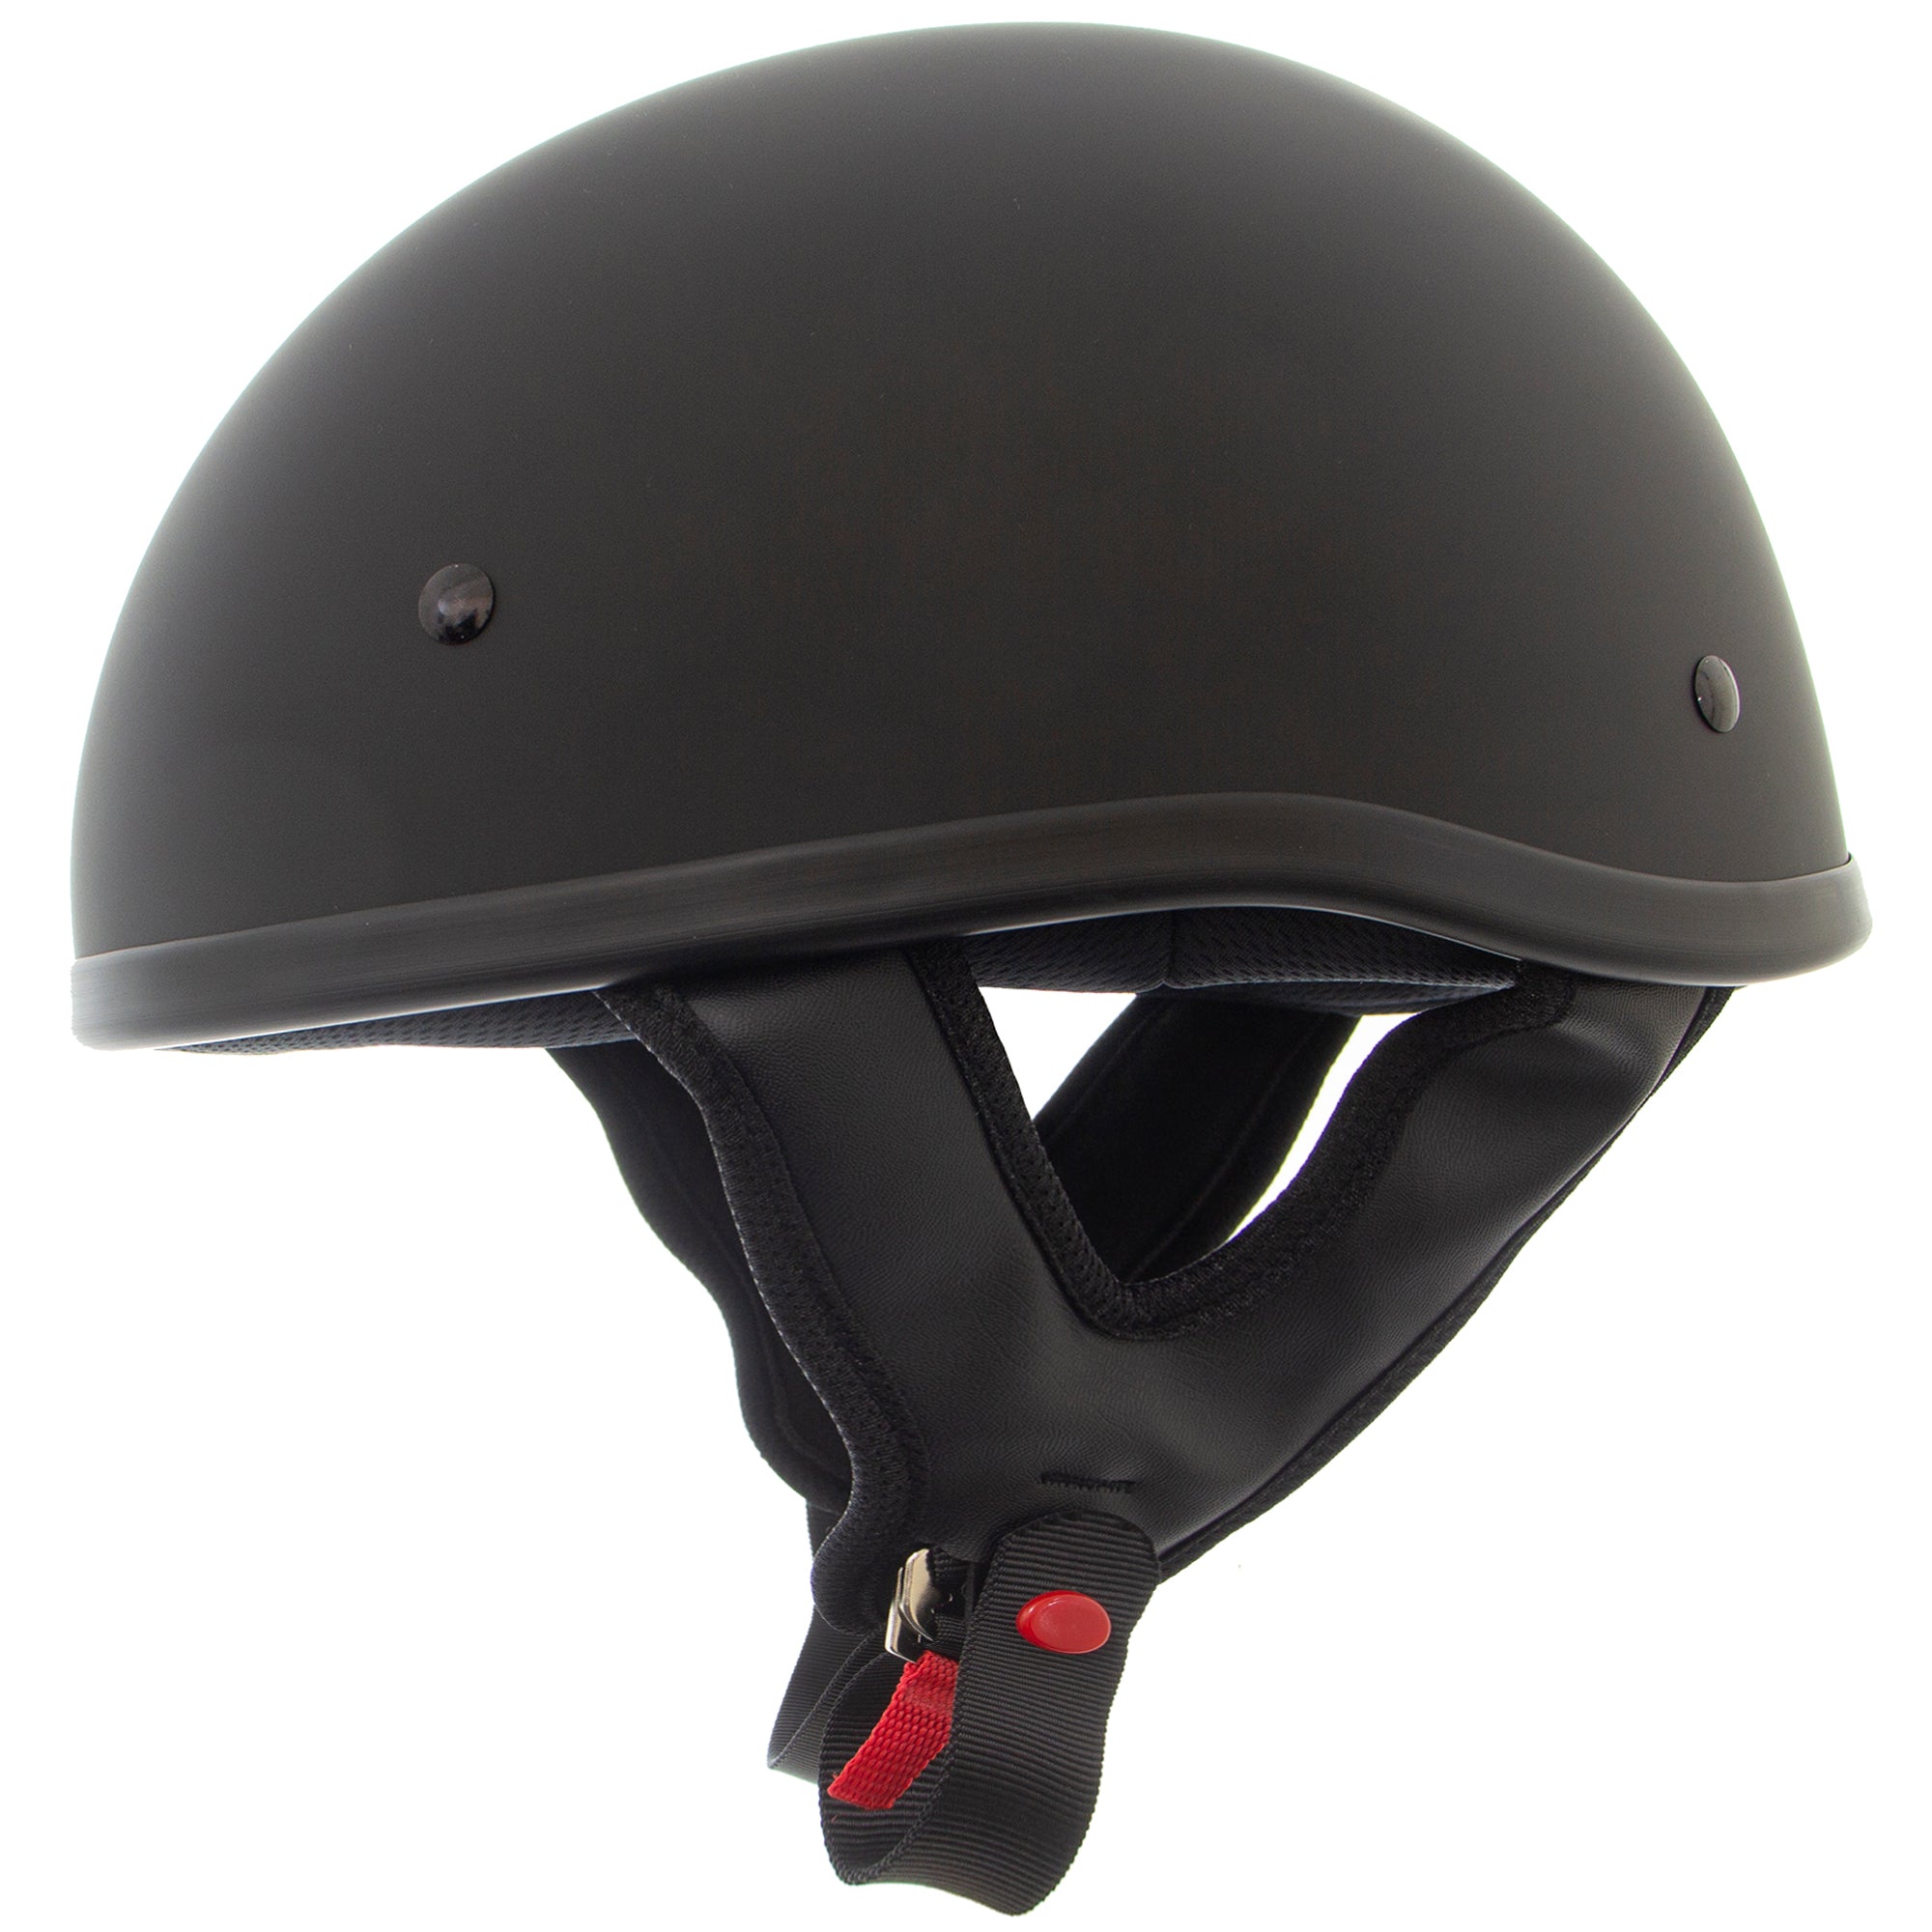 Hot Leathers HLD1045 Gloss Black 'Cross de Lis' Advanced Dot Approved Skull Half Helmet for Men and Women Biker - X-Small